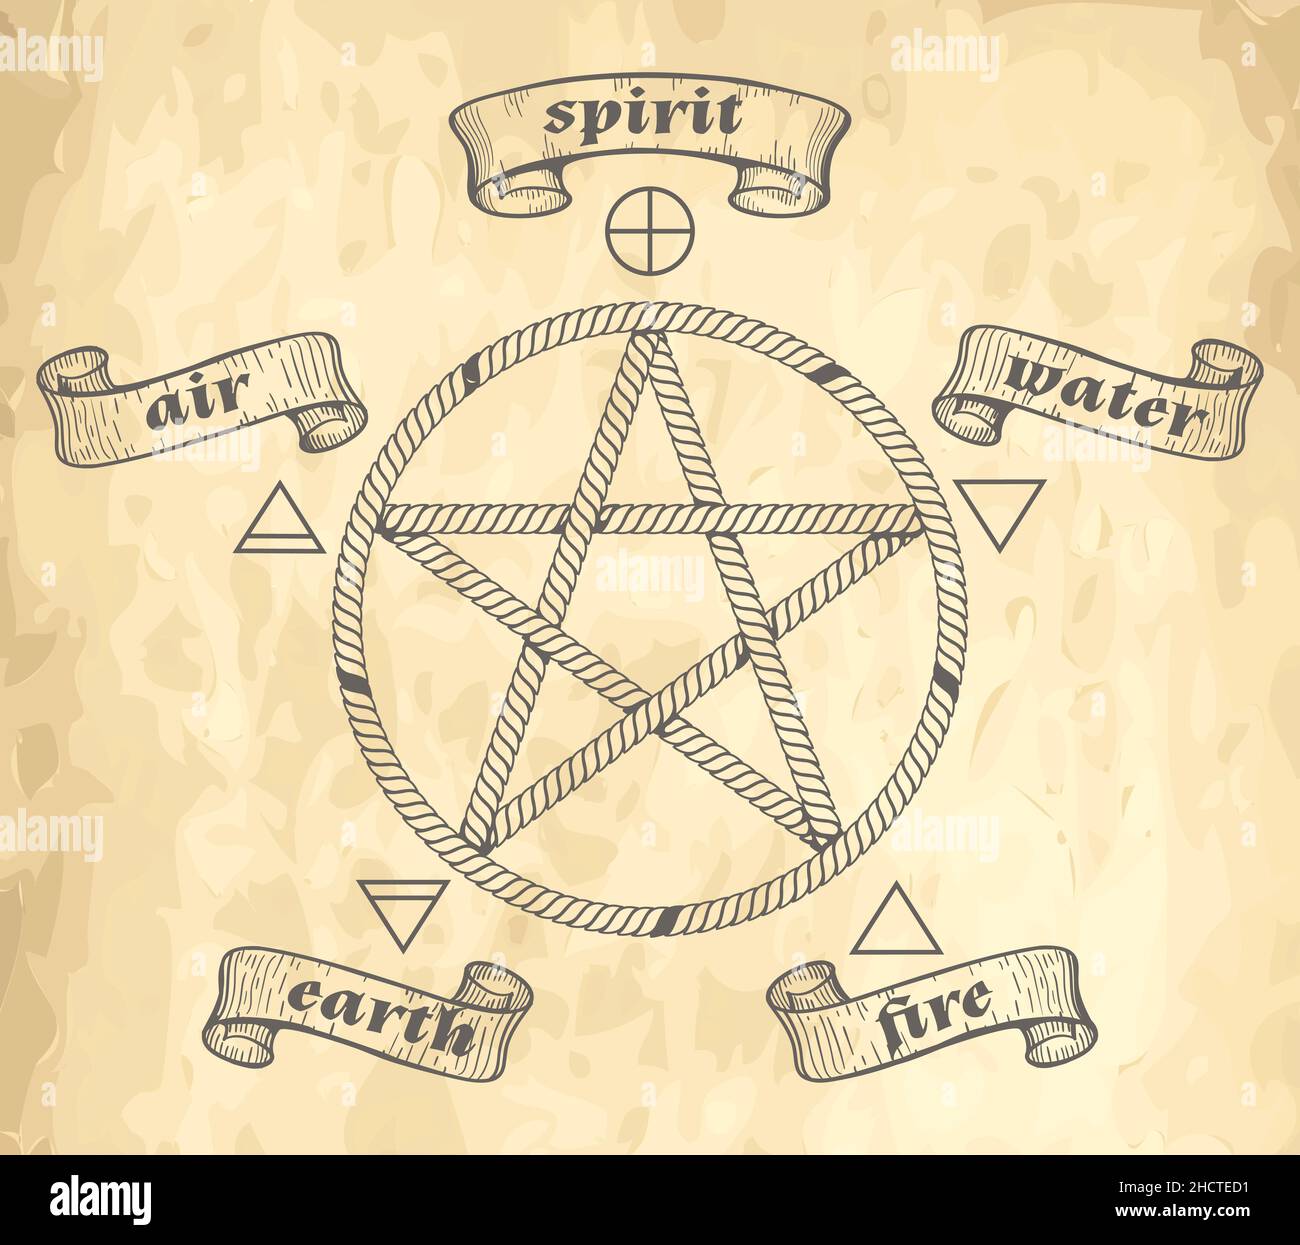 Pentagram simbolo Esoterico medievale con Elemememetti occulti su sfondo cartaceo. Illustrazione vettoriale. Illustrazione Vettoriale